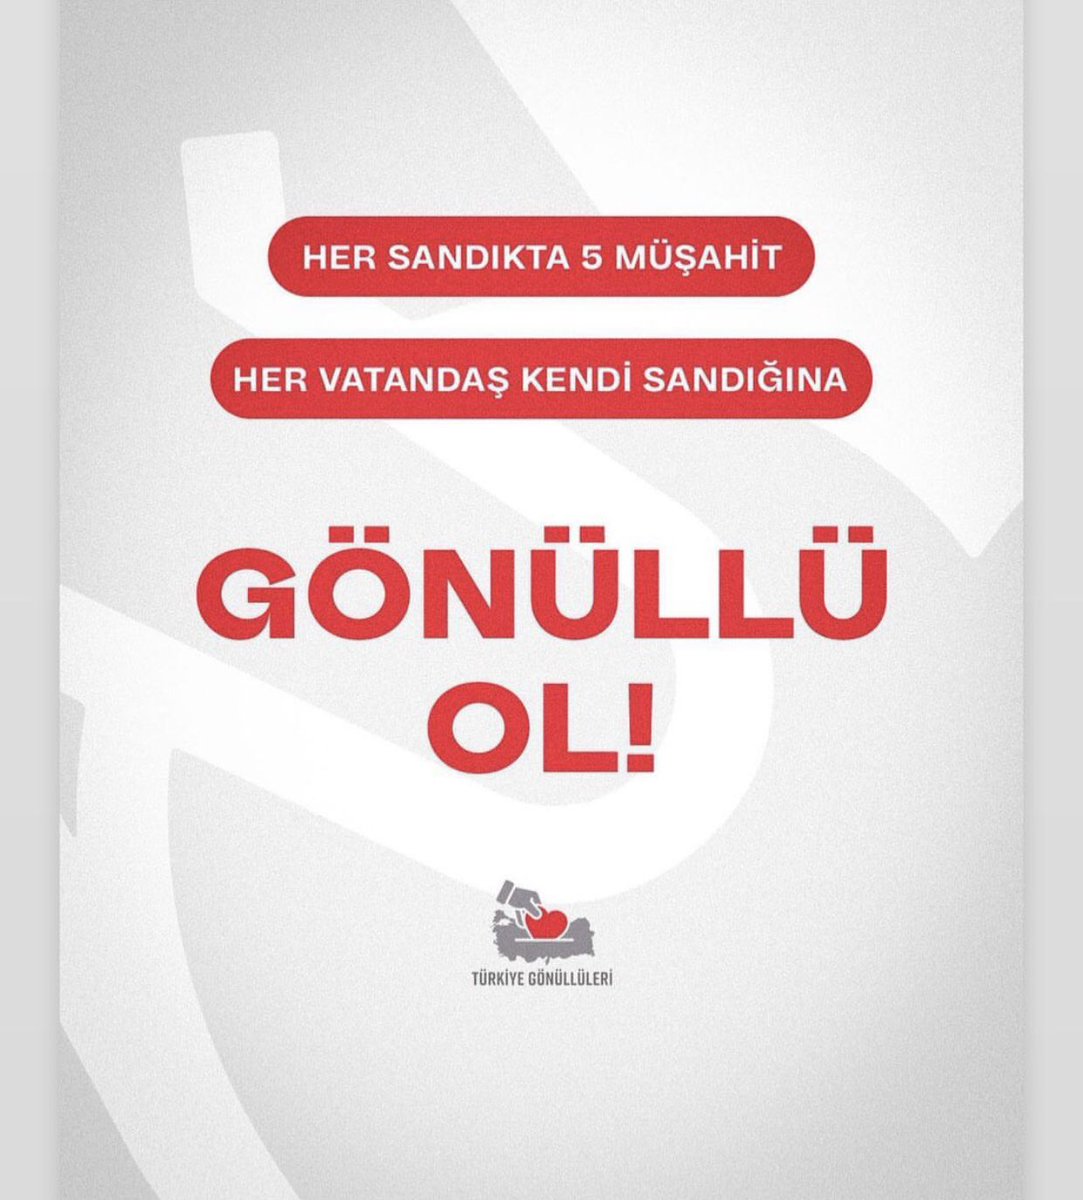 Her sandıkta 5 müşahit.   
Her vatandaş kendi sandığına!  
#GönüllüOl  SON GÜN 🙏🇹🇷👇
kayit.turkiyegonulluleri.org